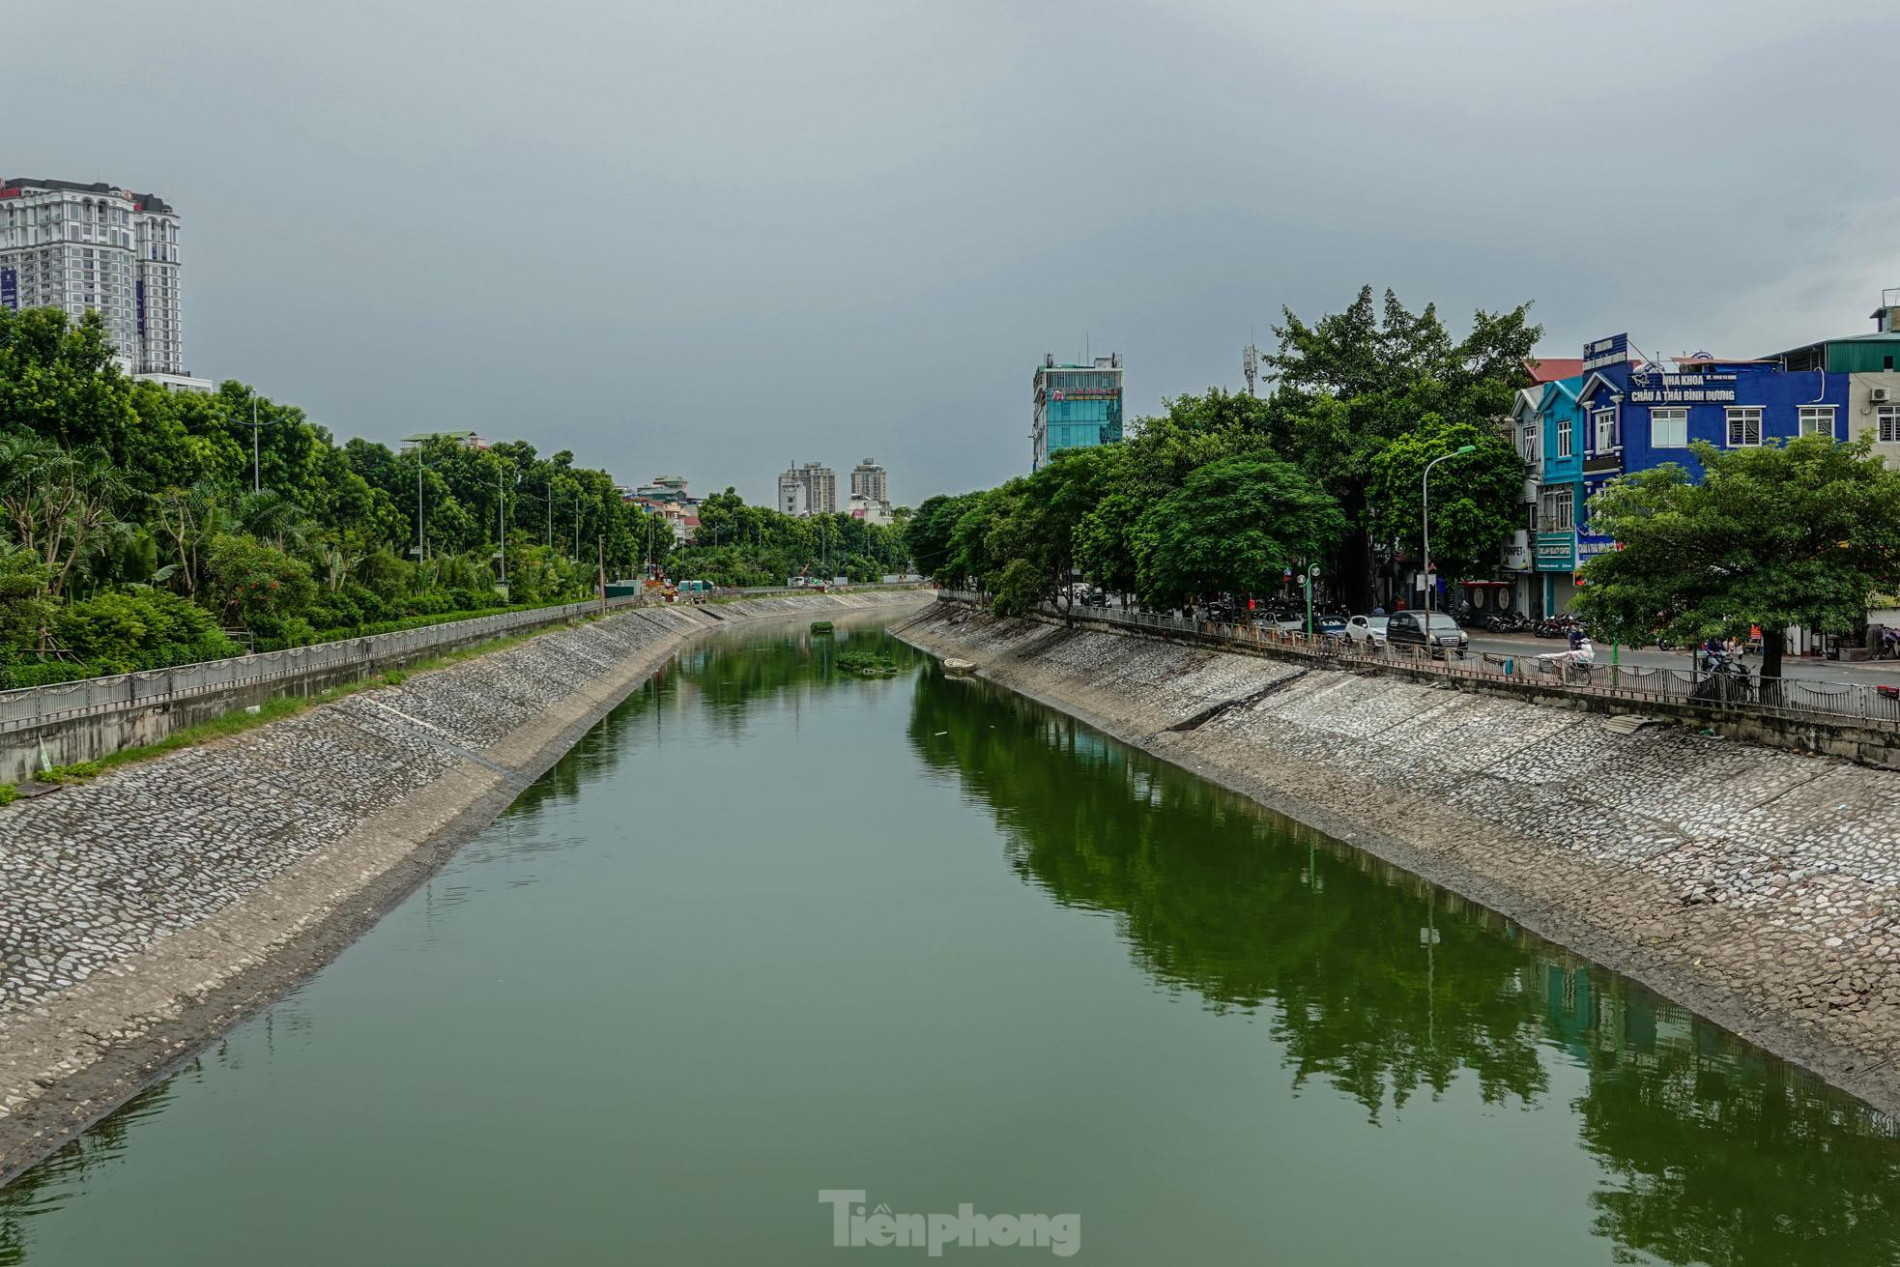 Nước sông Tô Lịch đổi màu xanh ngắt, người dân đội mưa bắt cả tạ cá ảnh 1